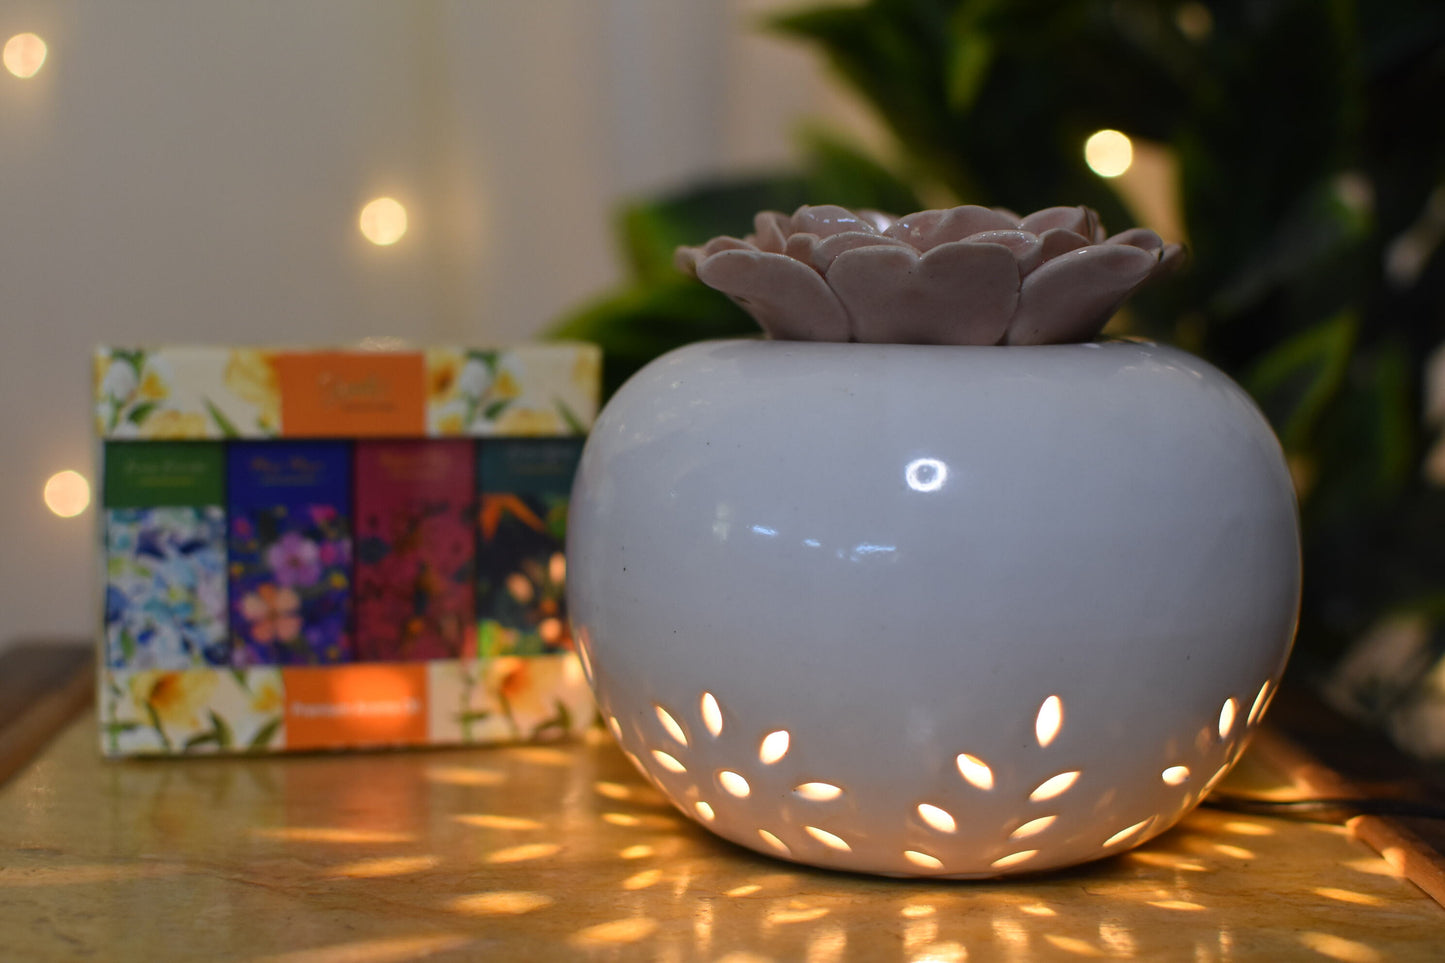 Lotus Lamp Electric Diffuser With 4 Premium Aroma Oils